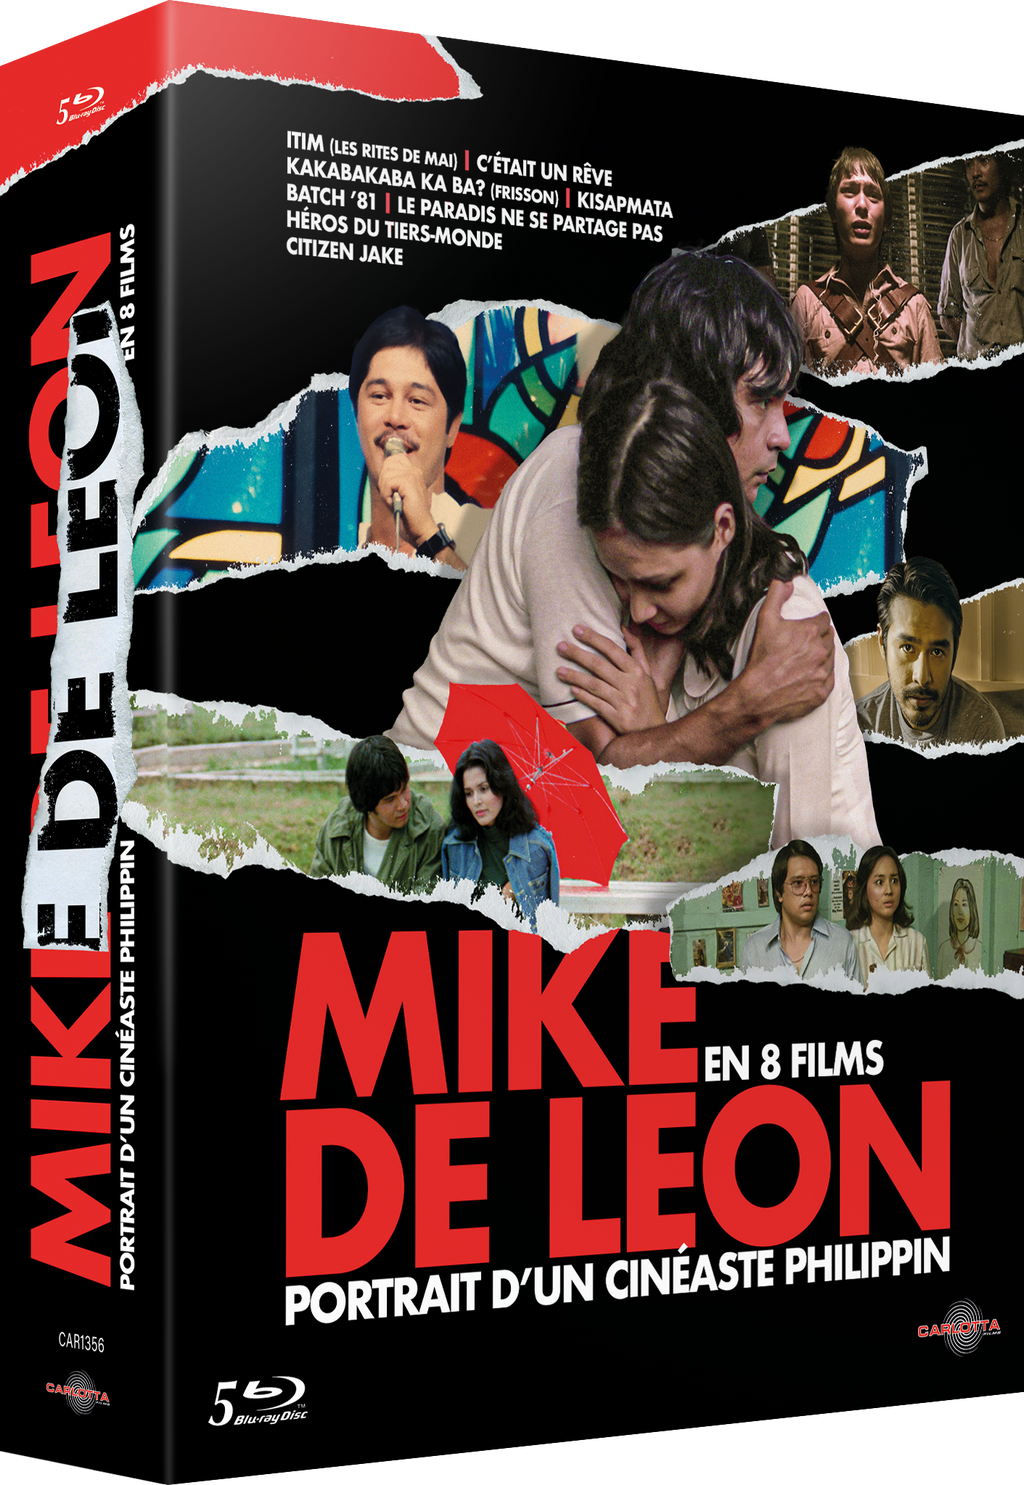 Mike De Leon, portrait of a Filipino filmmaker - 8 films